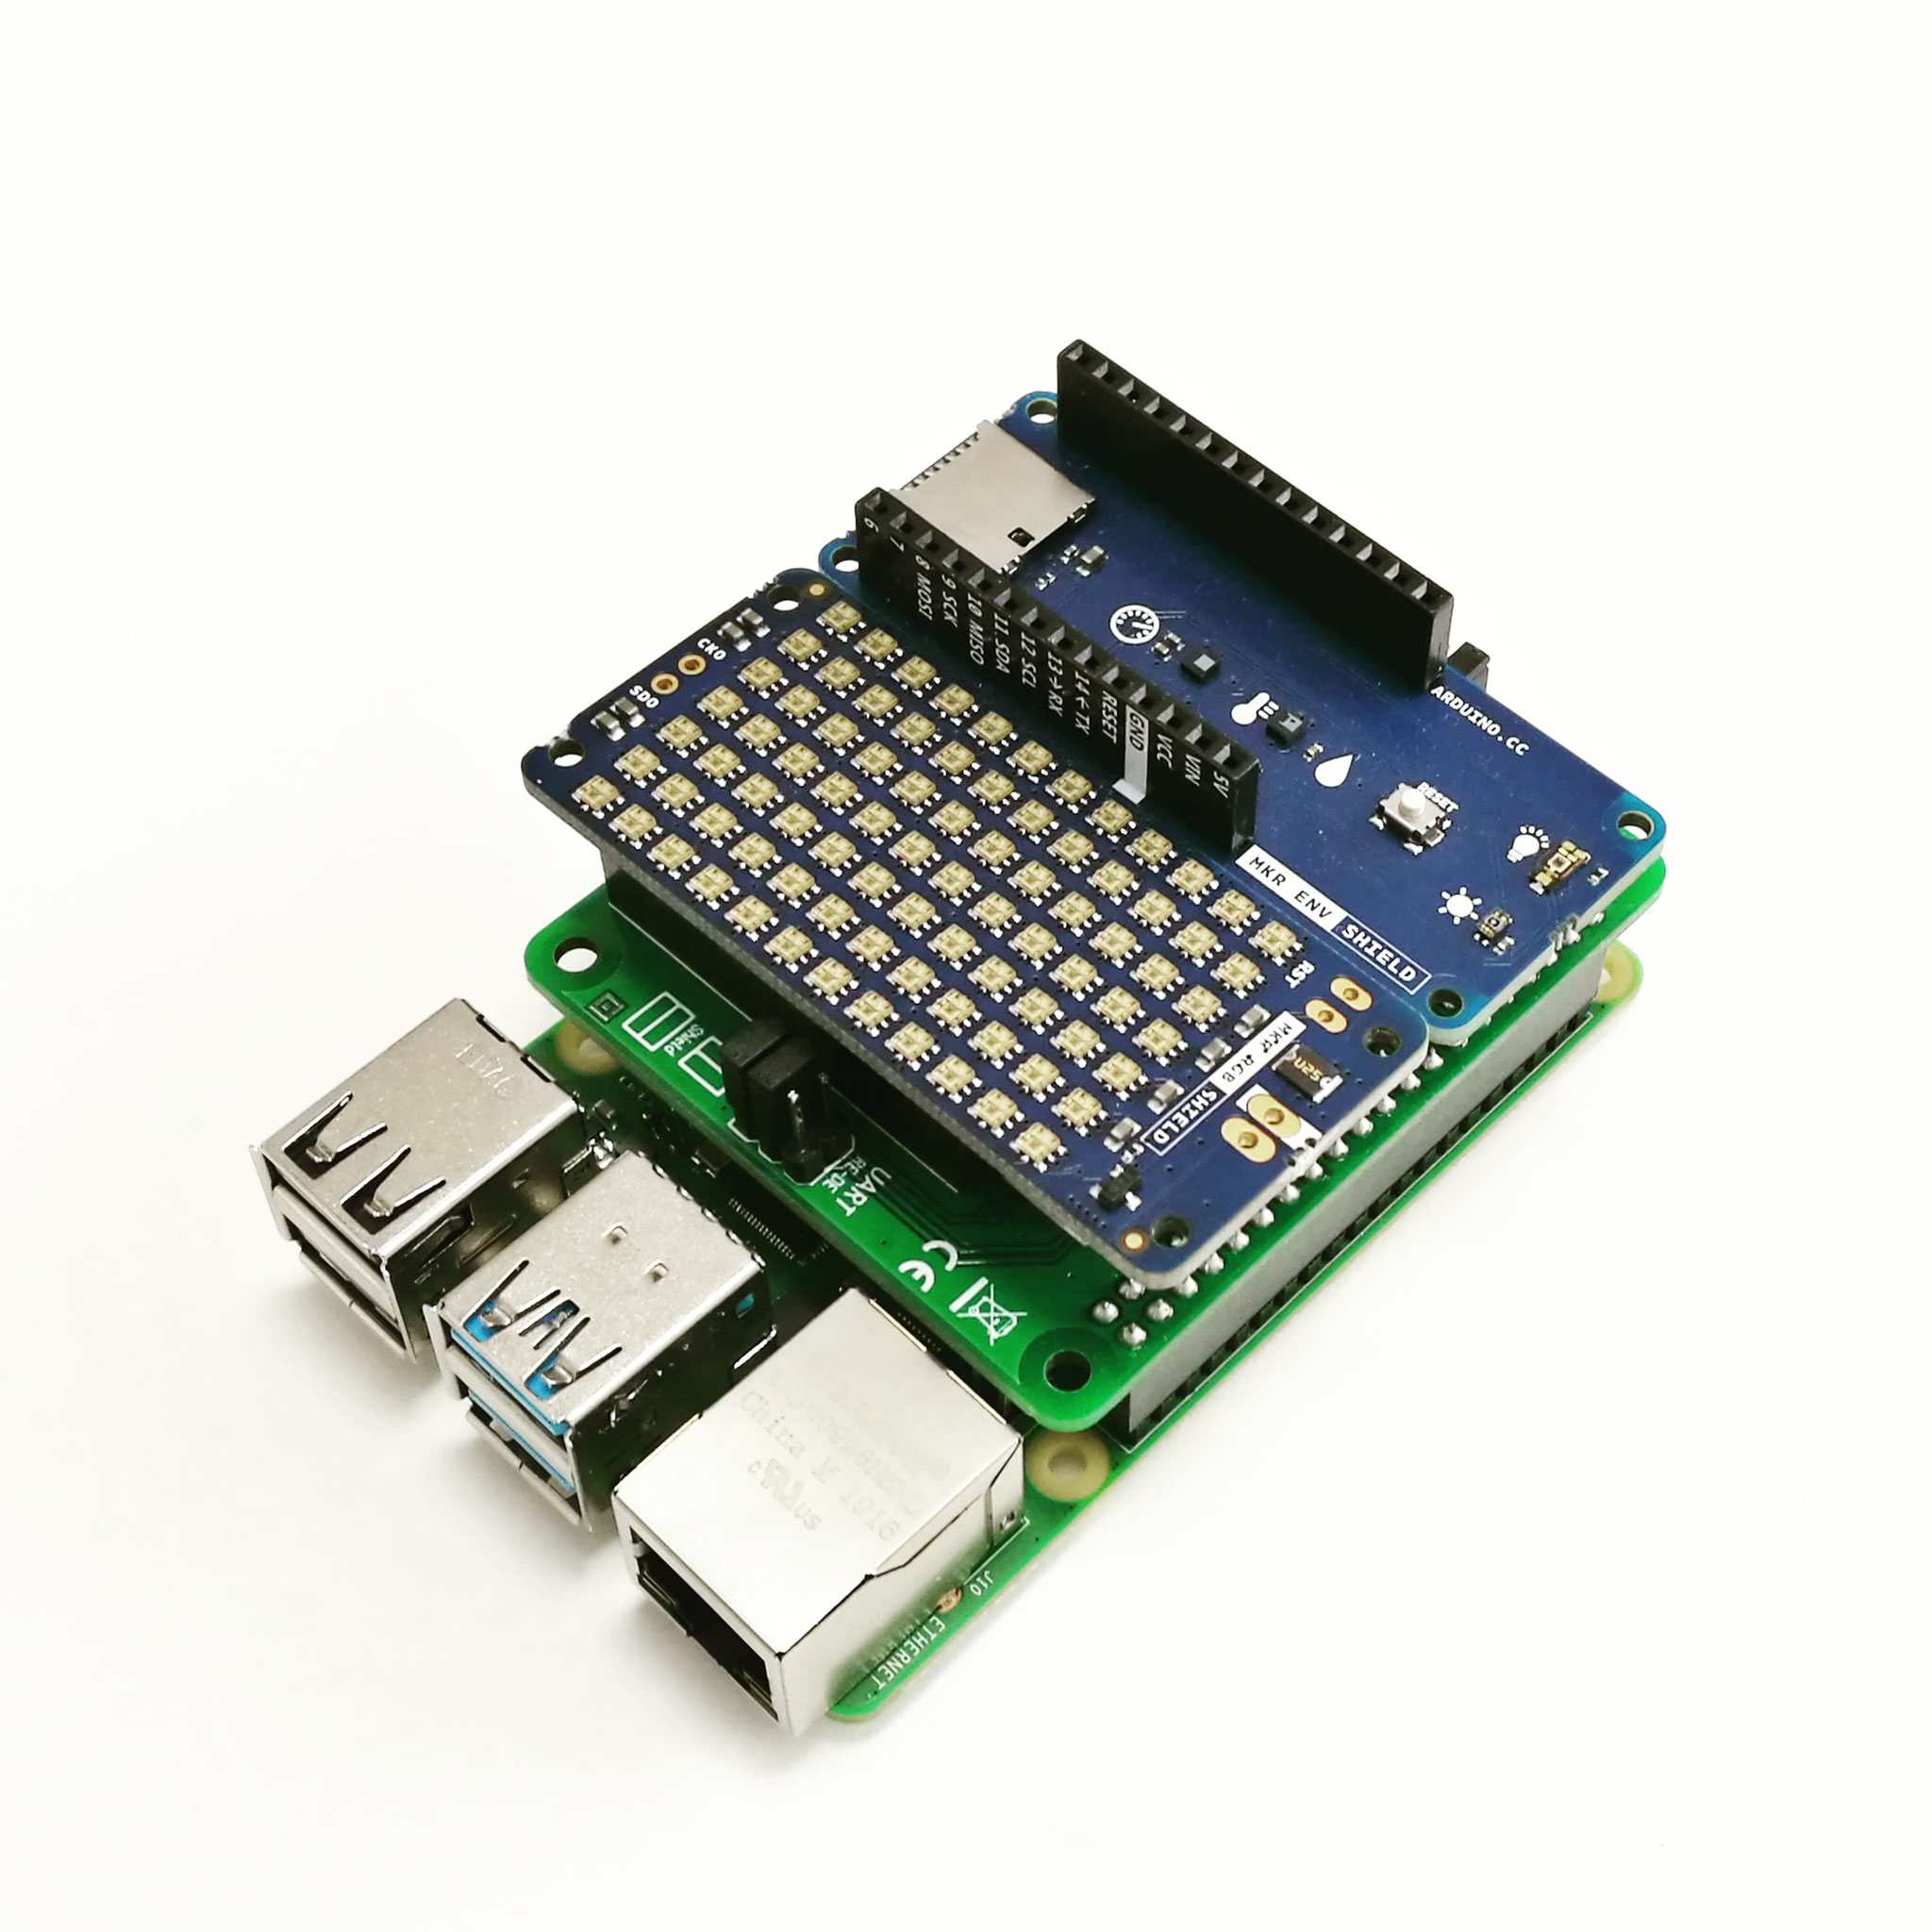 Arduino MKR Shields am Raspberry Pi verwenden